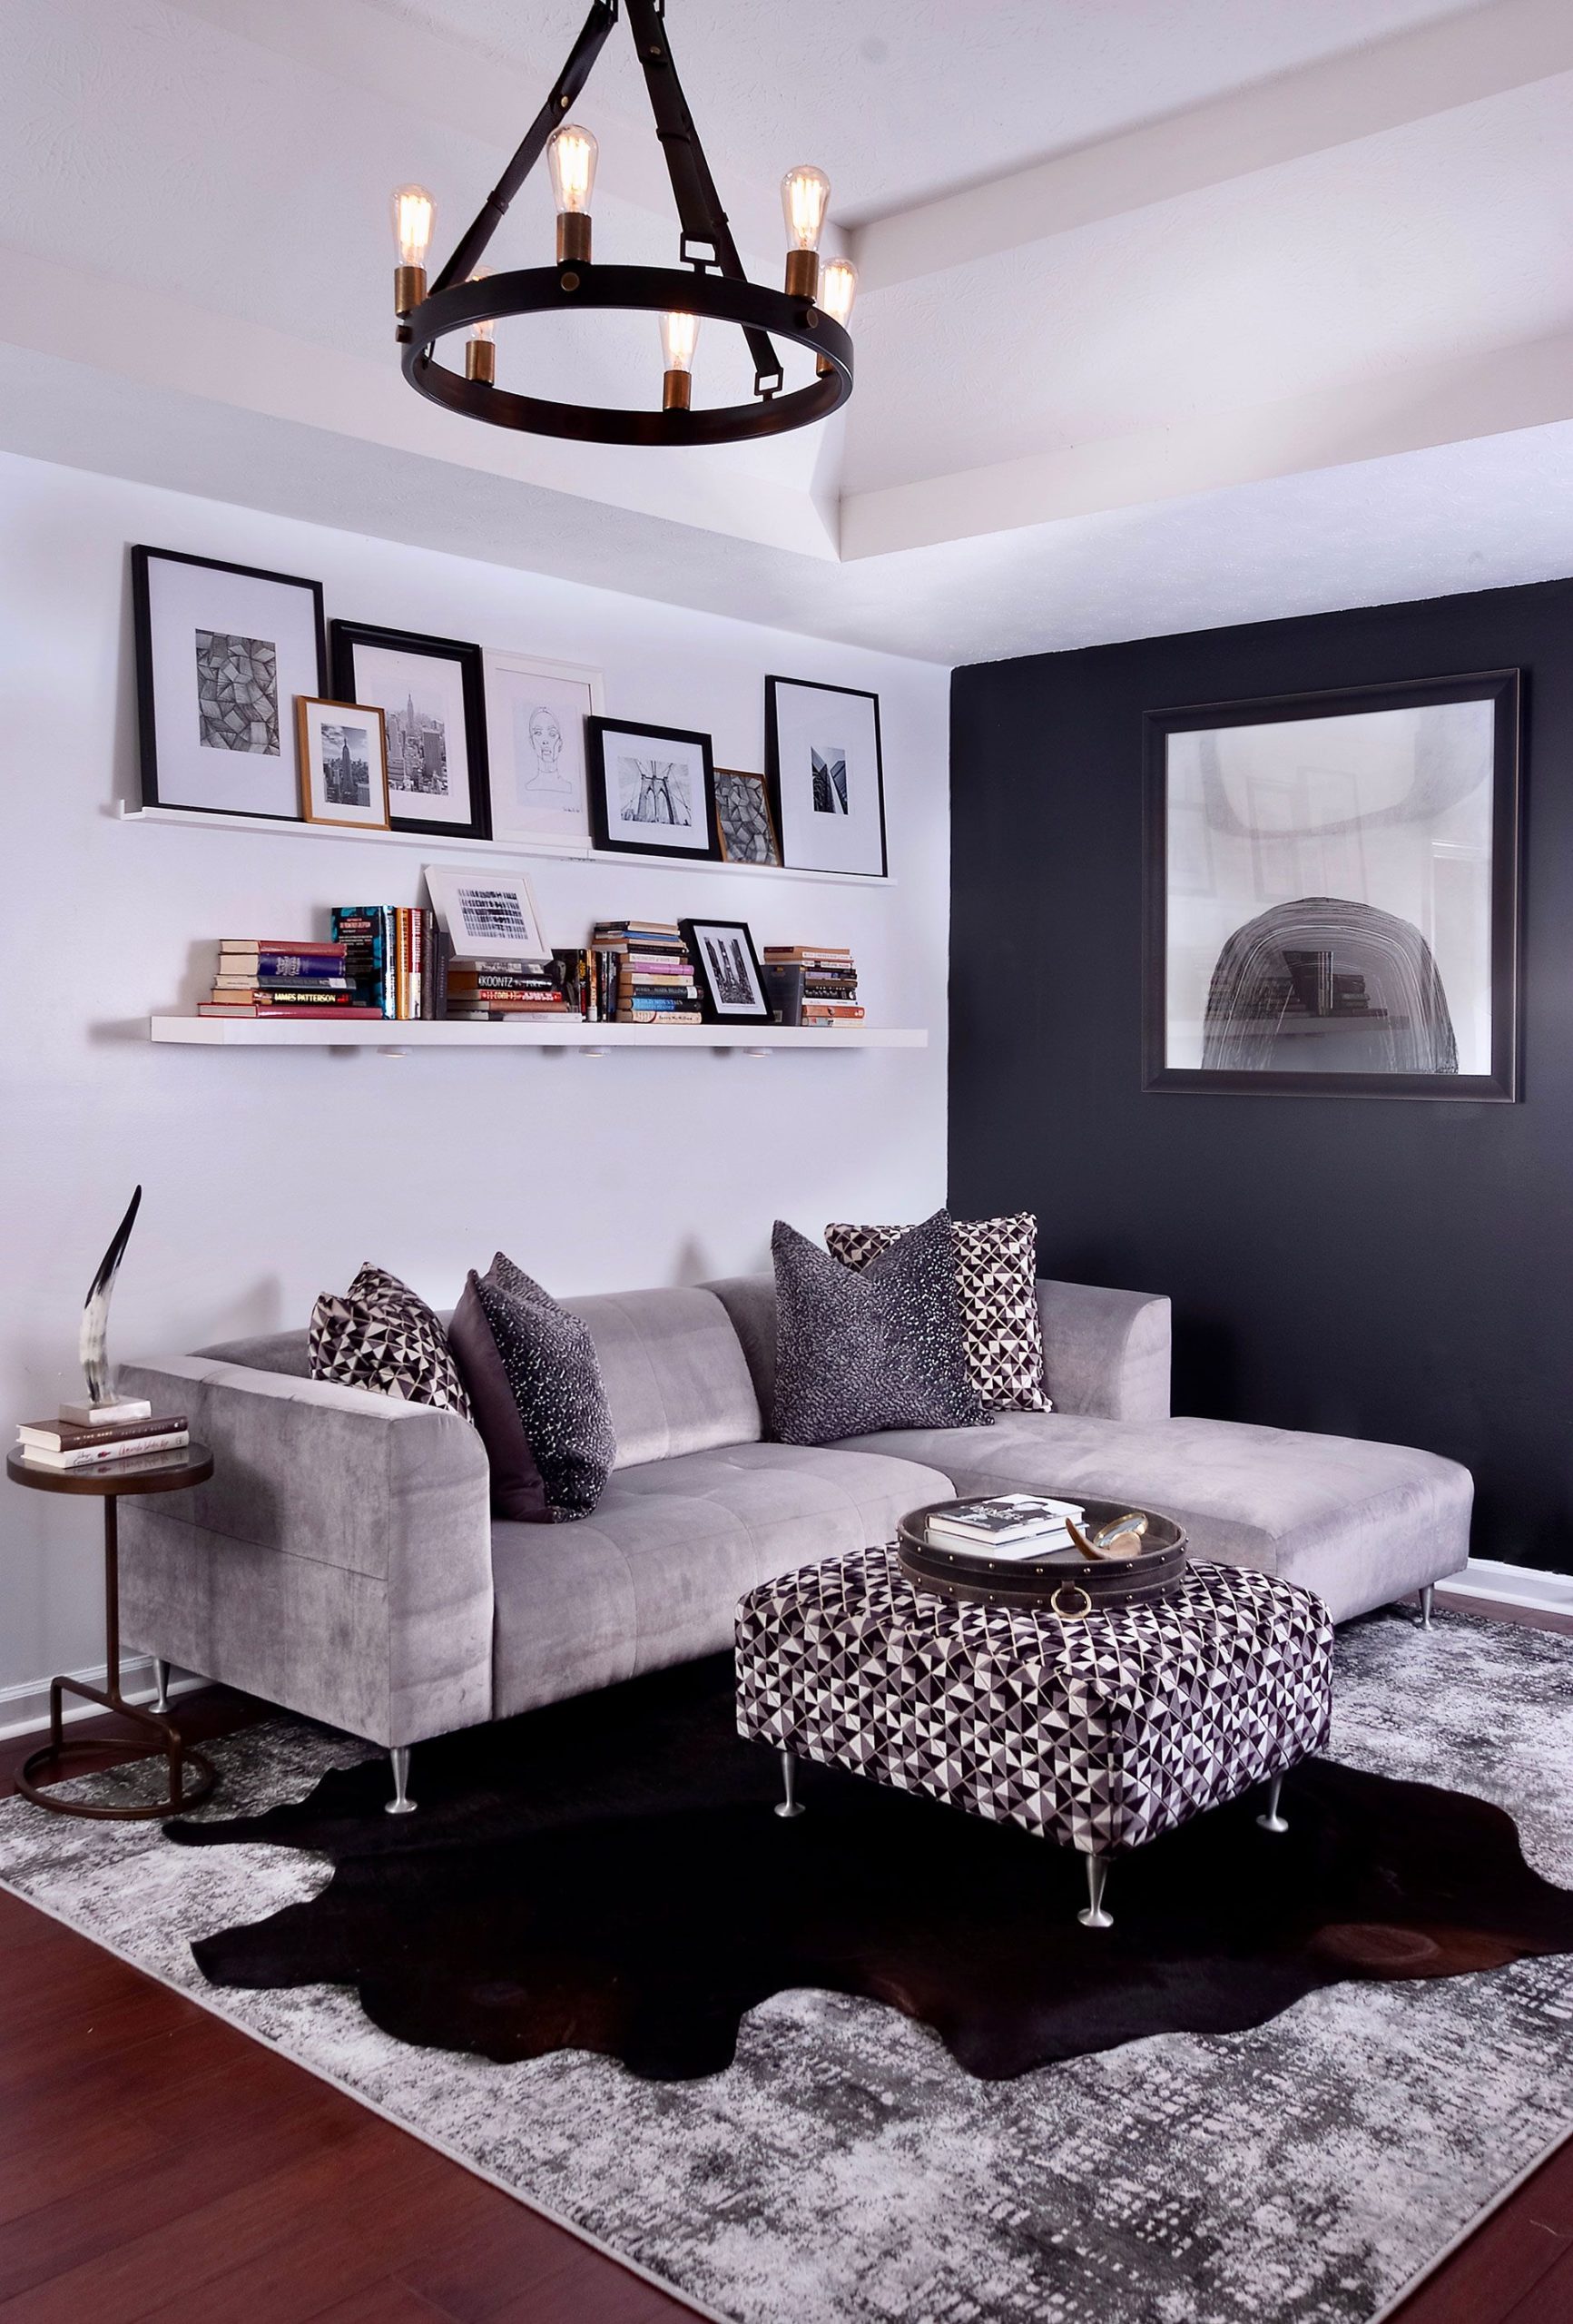 Black and White living room design